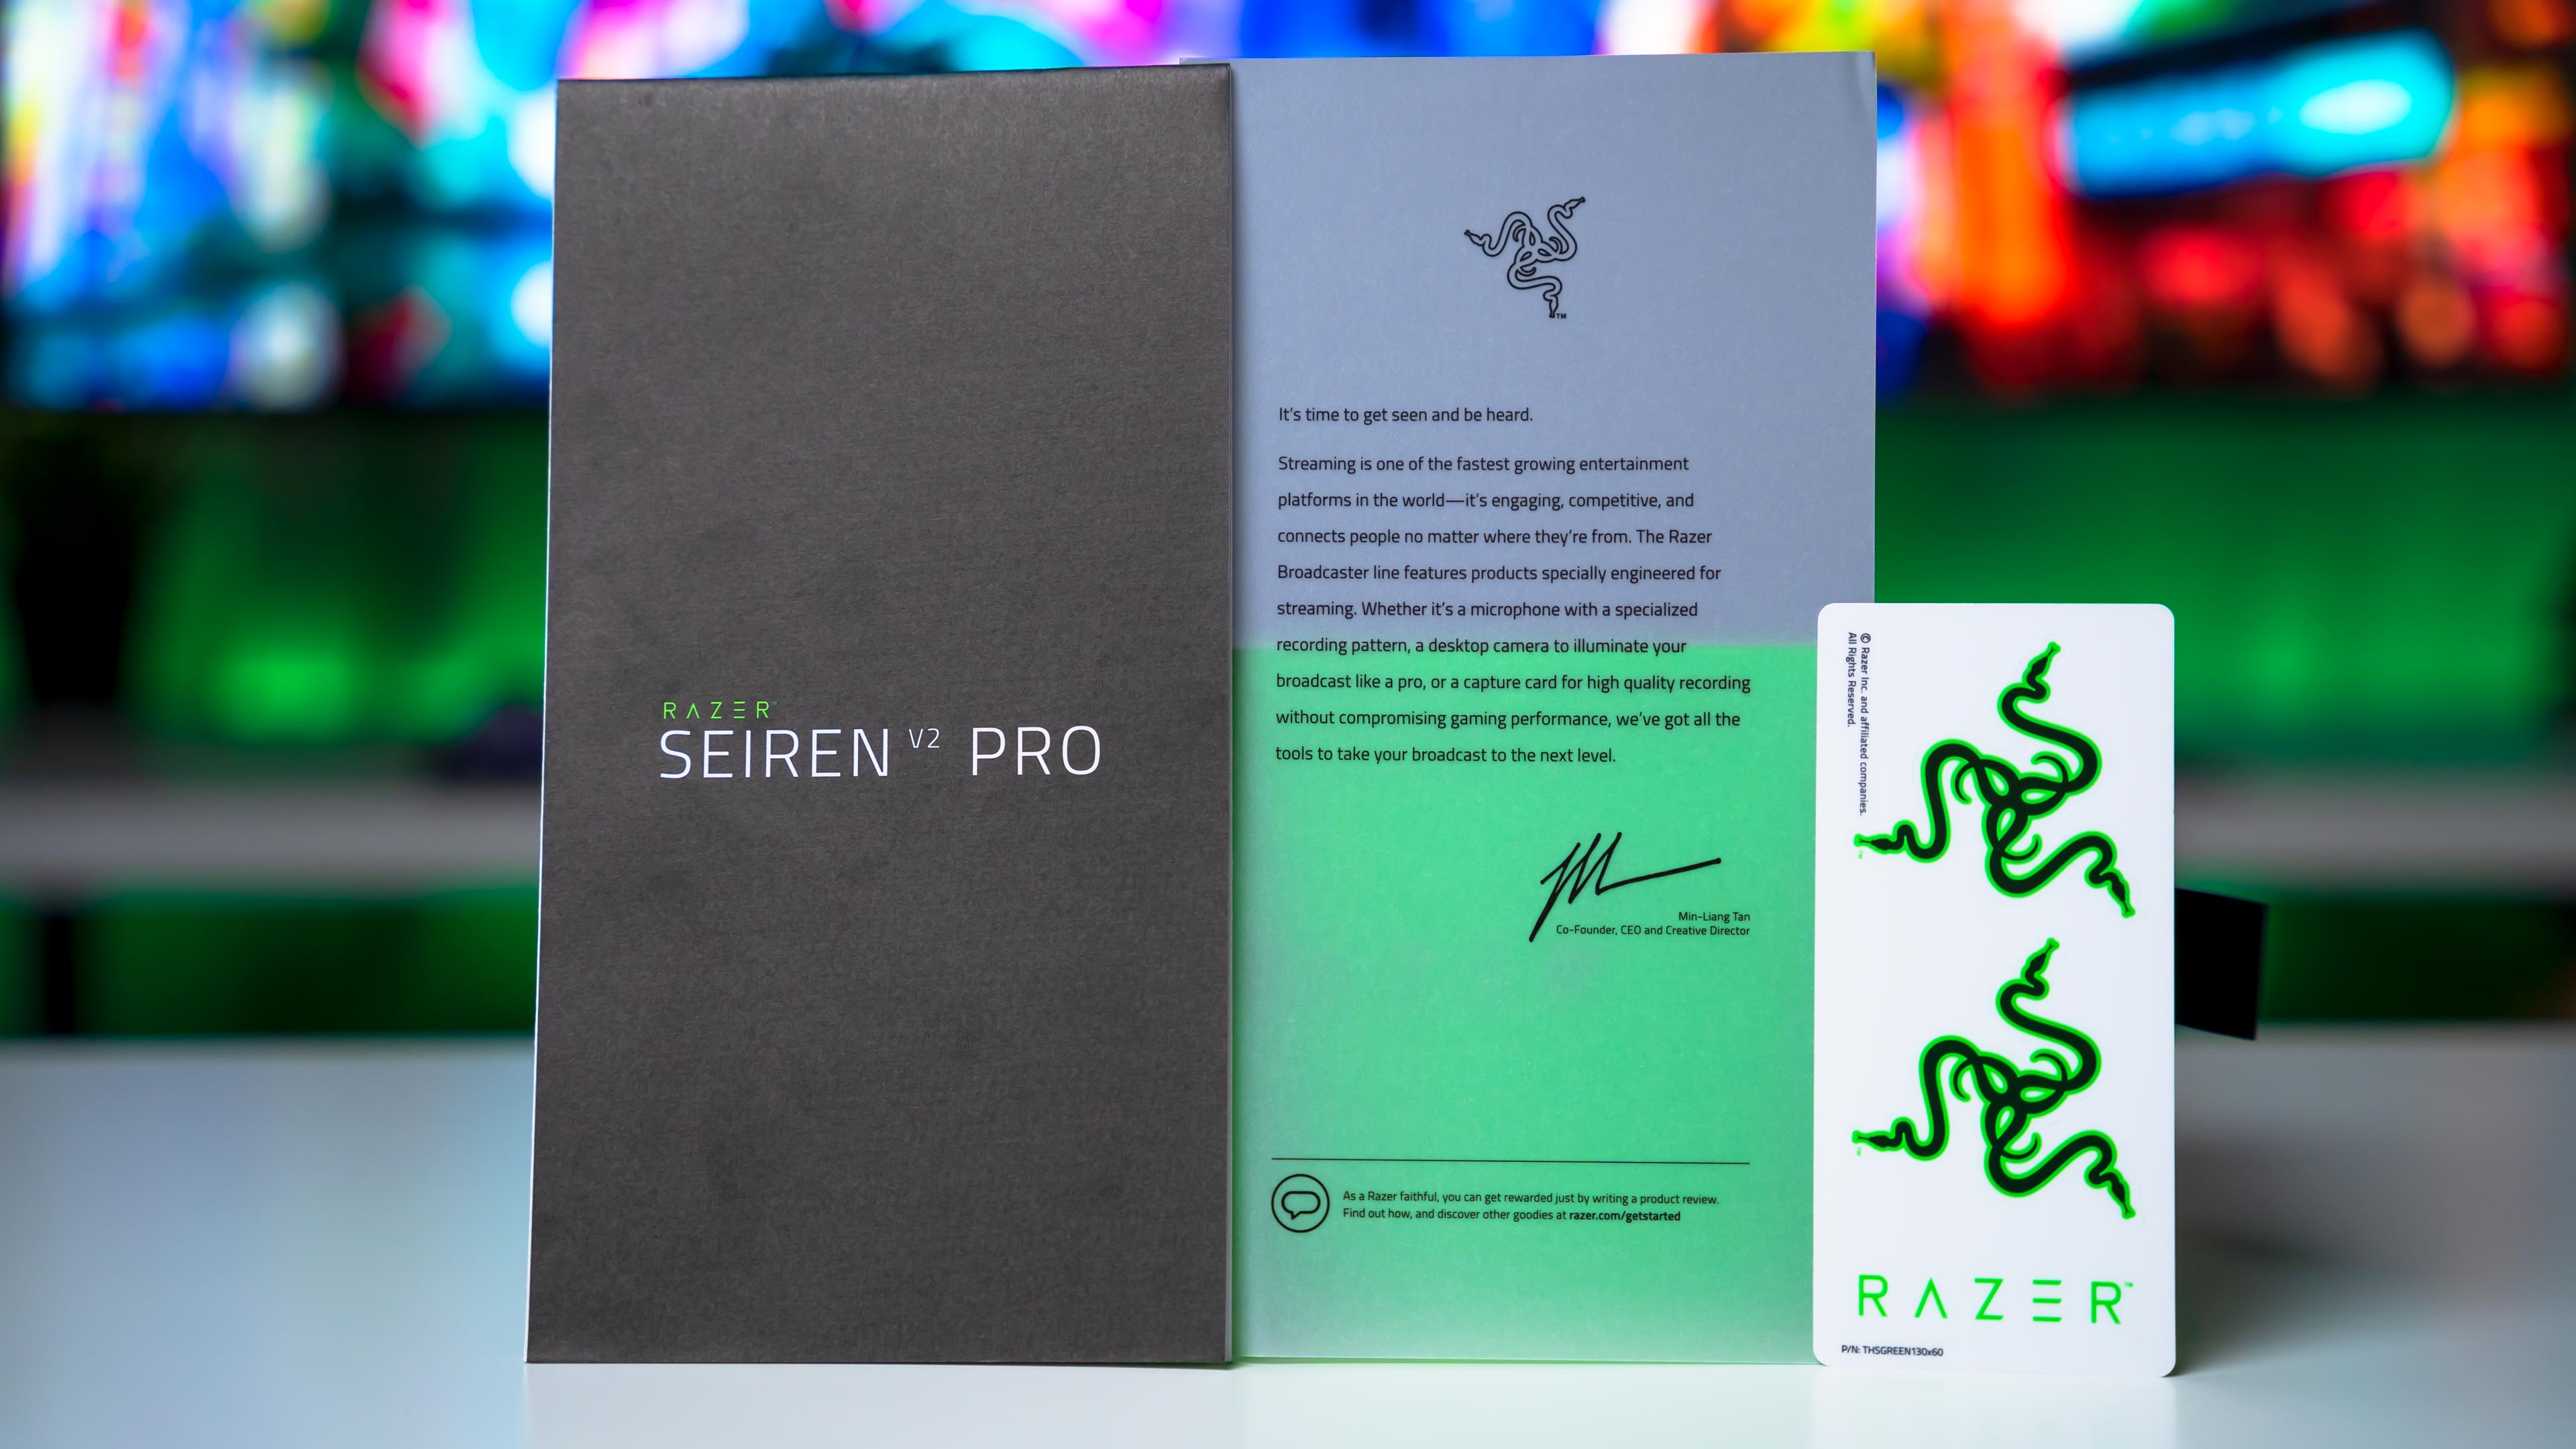 Razer Seiren V2 Pro Box (8)